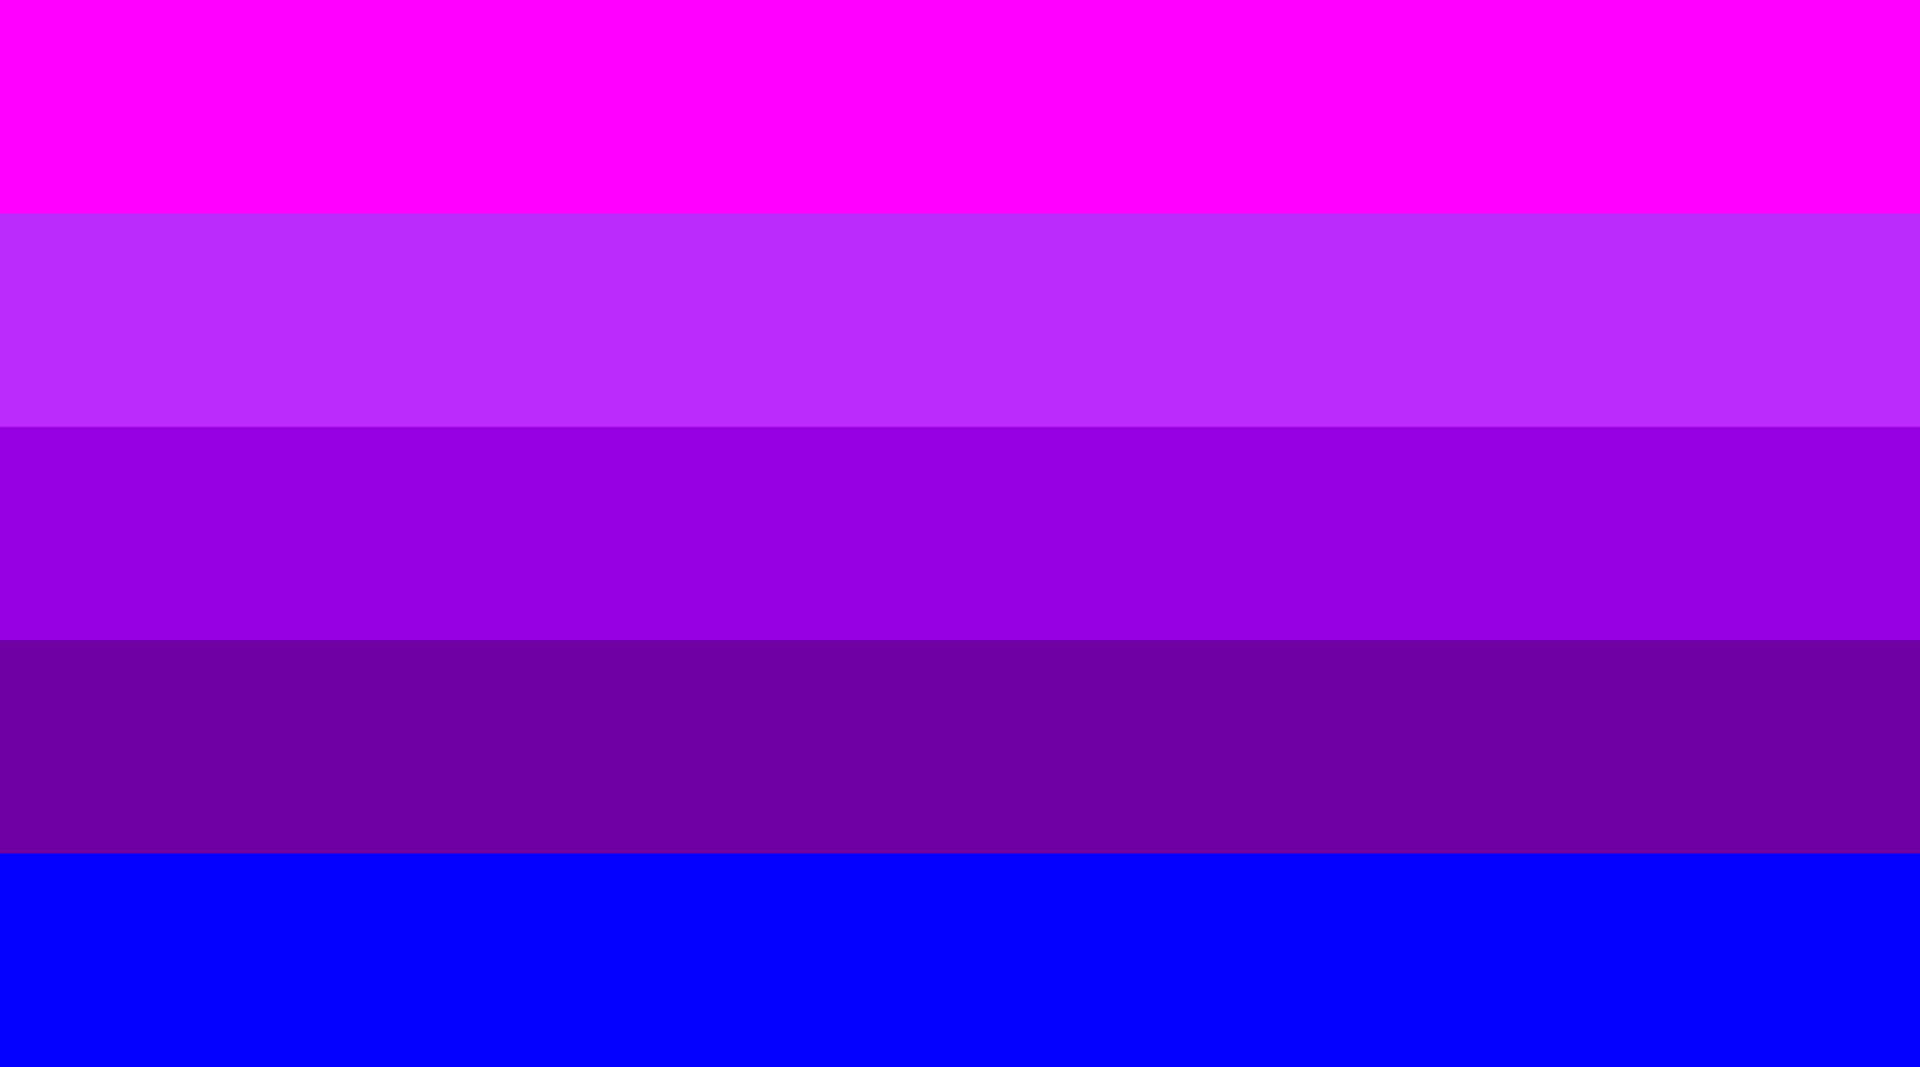 Imagende La Bandera Del Orgullo Bisexual Que Representa El Amor Y La Aceptación Para Los Miembros Bisexuales De La Comunidad Lgbtqia+. Fondo de pantalla